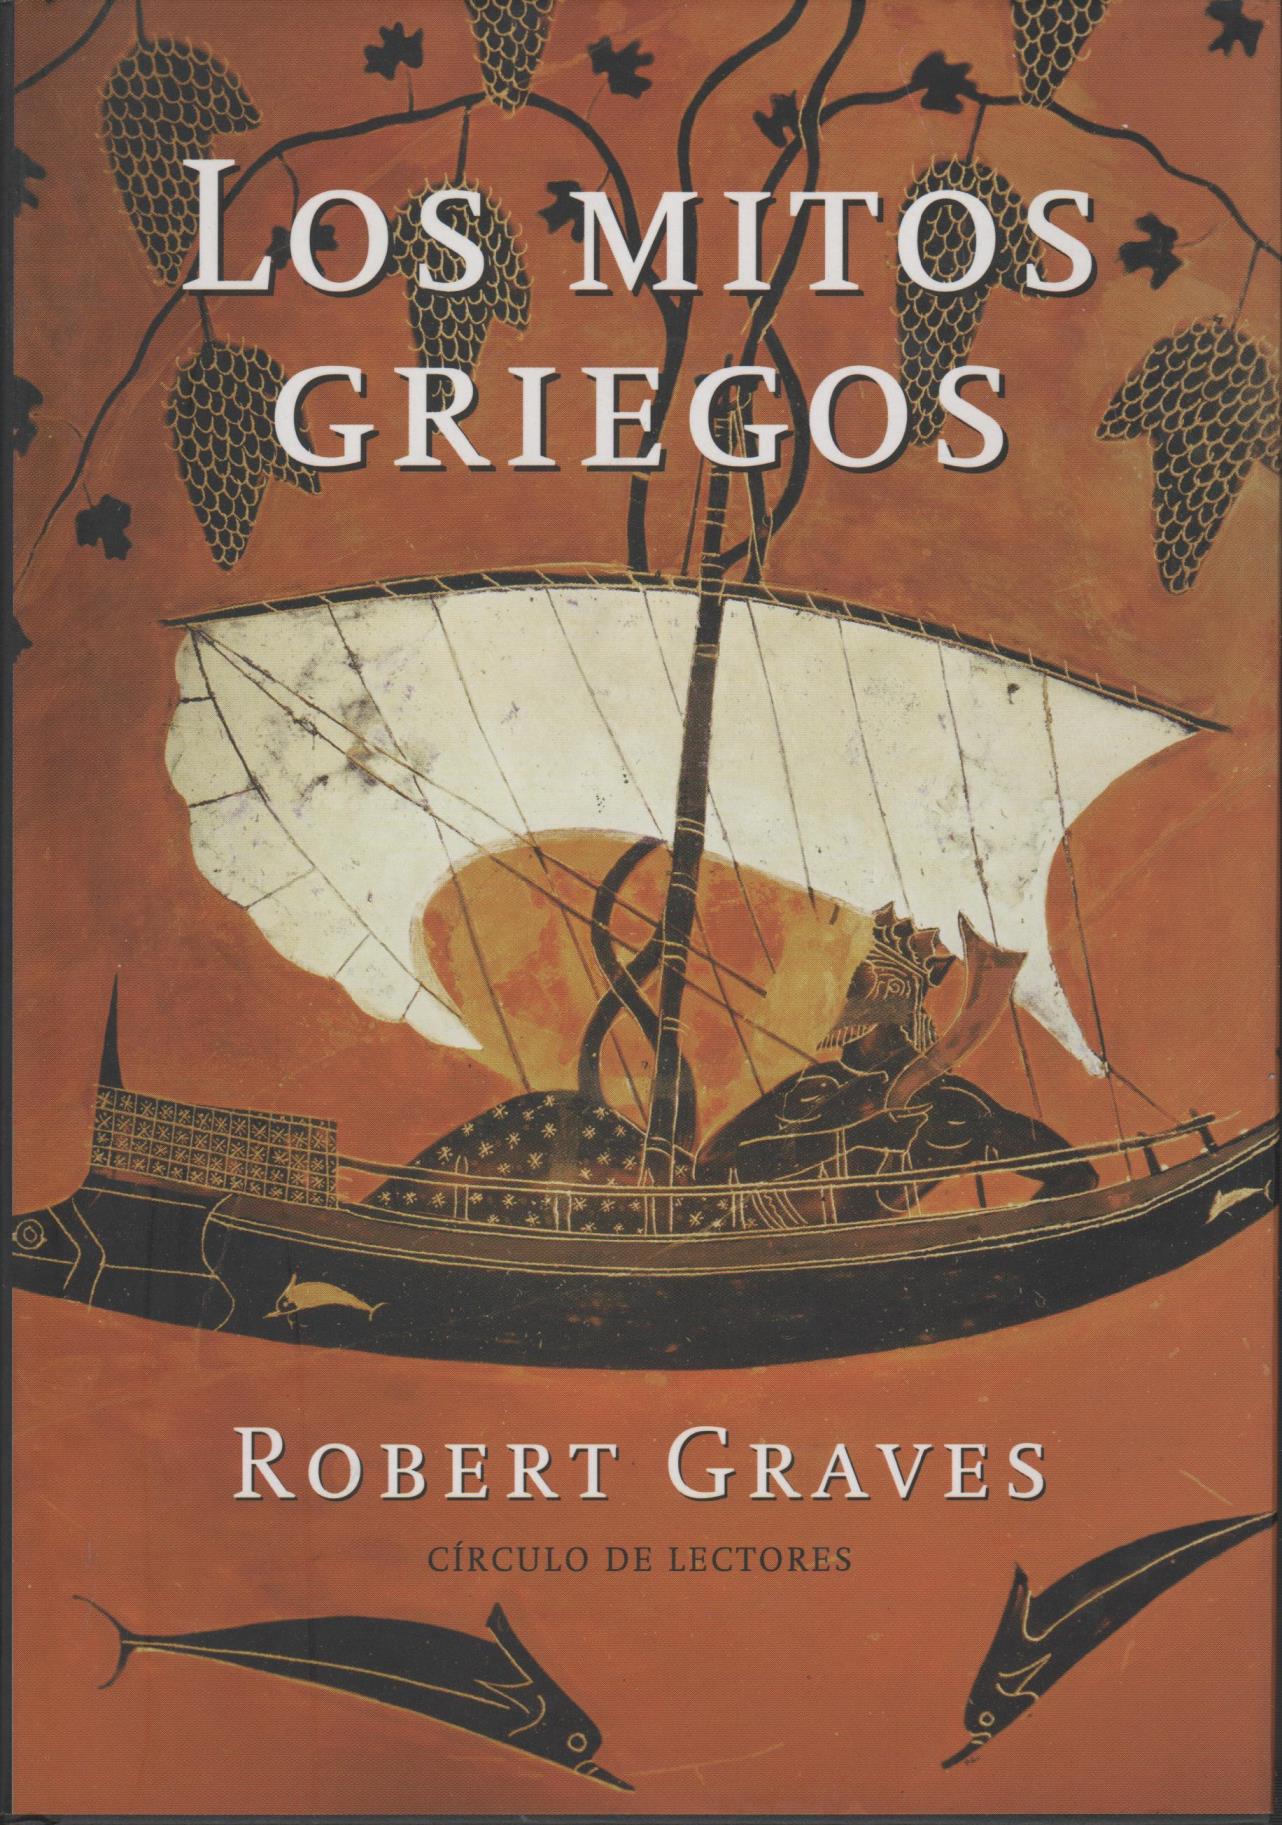 Robert Graves: Los Mitos Griegos (Spanish language, 2005, Alianza)